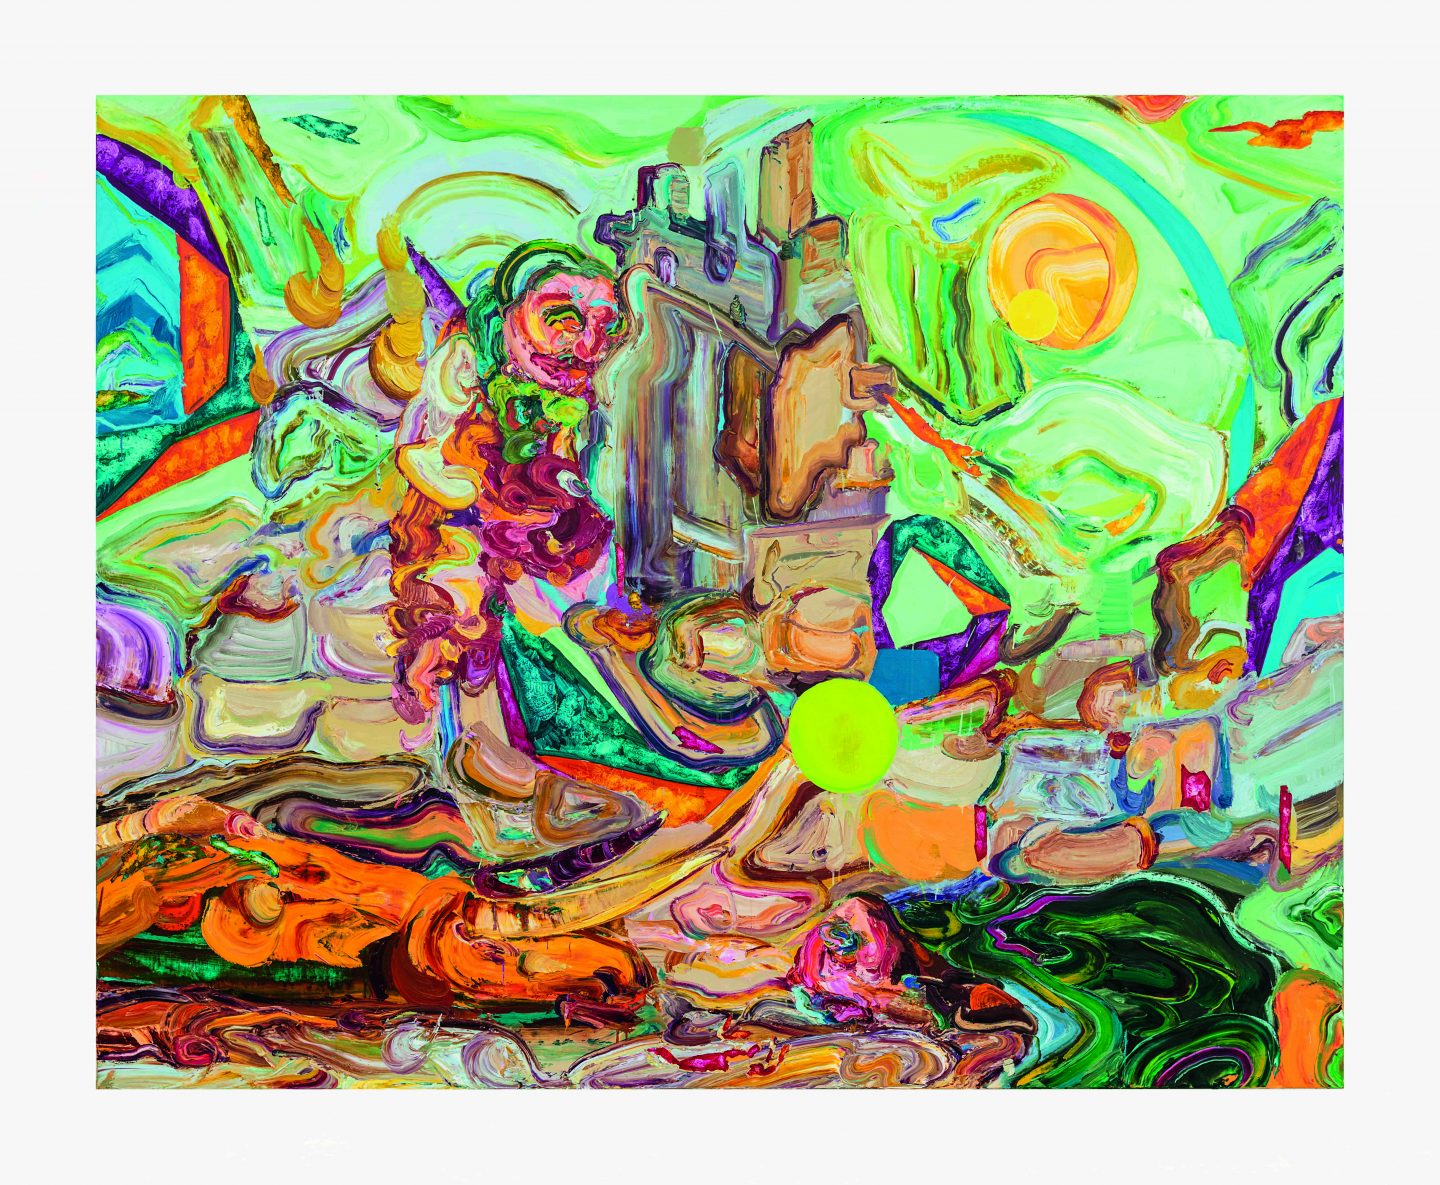 L’Épaule des souffles - 2021 - Huile sur toile - 200 × 250 cm - Courtesy Art : Concept, Paris